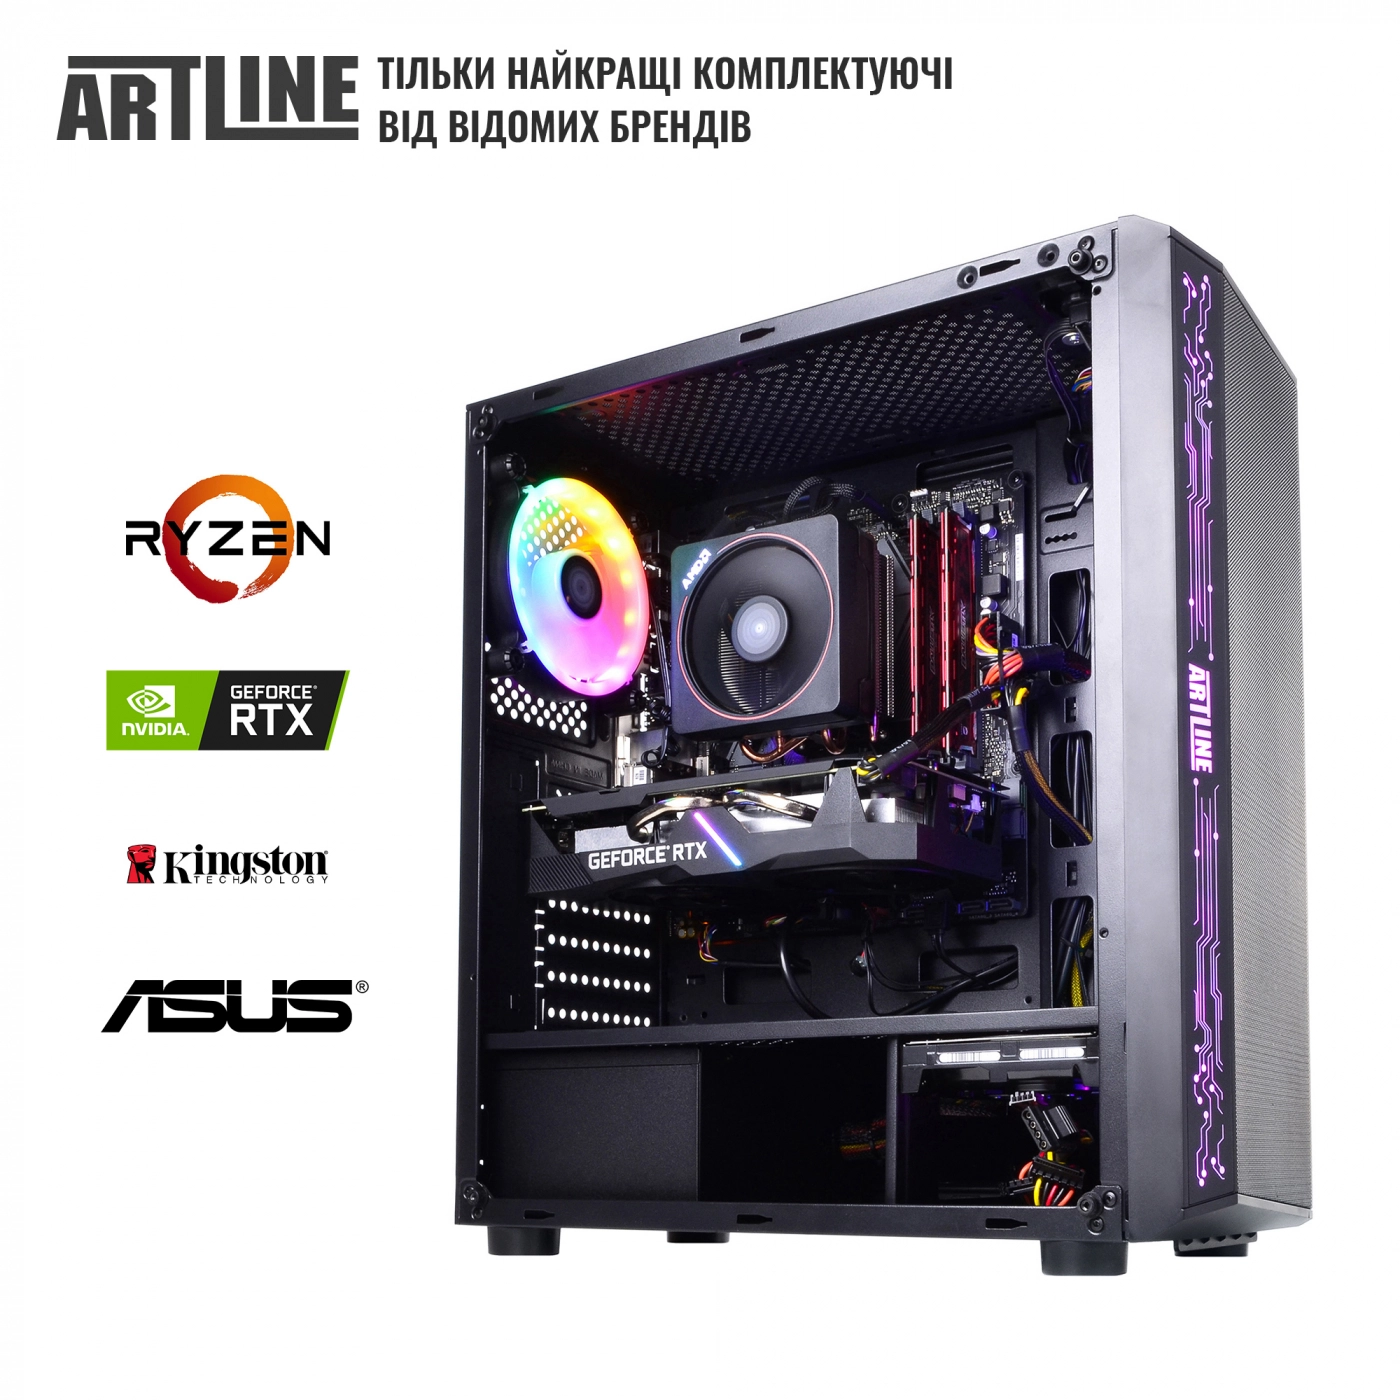 Купить Компьютер ARTLINE Gaming X65v19 - фото 5